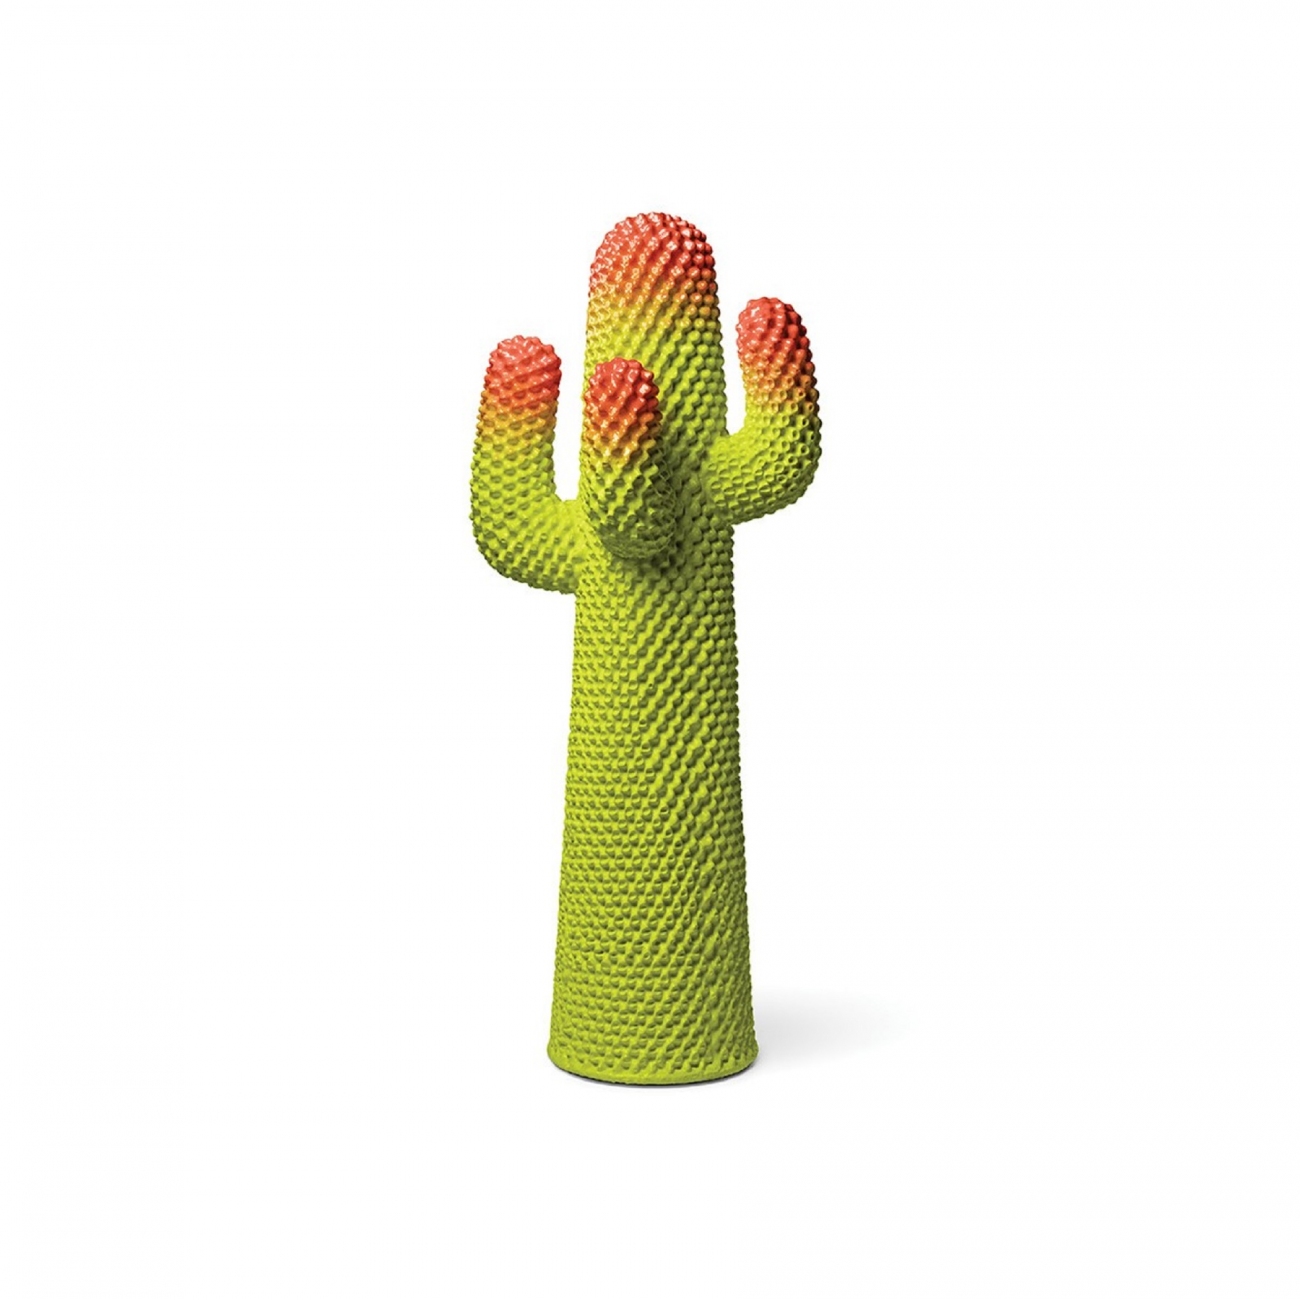 Gufram Cactus Metacactus Appendiabiti